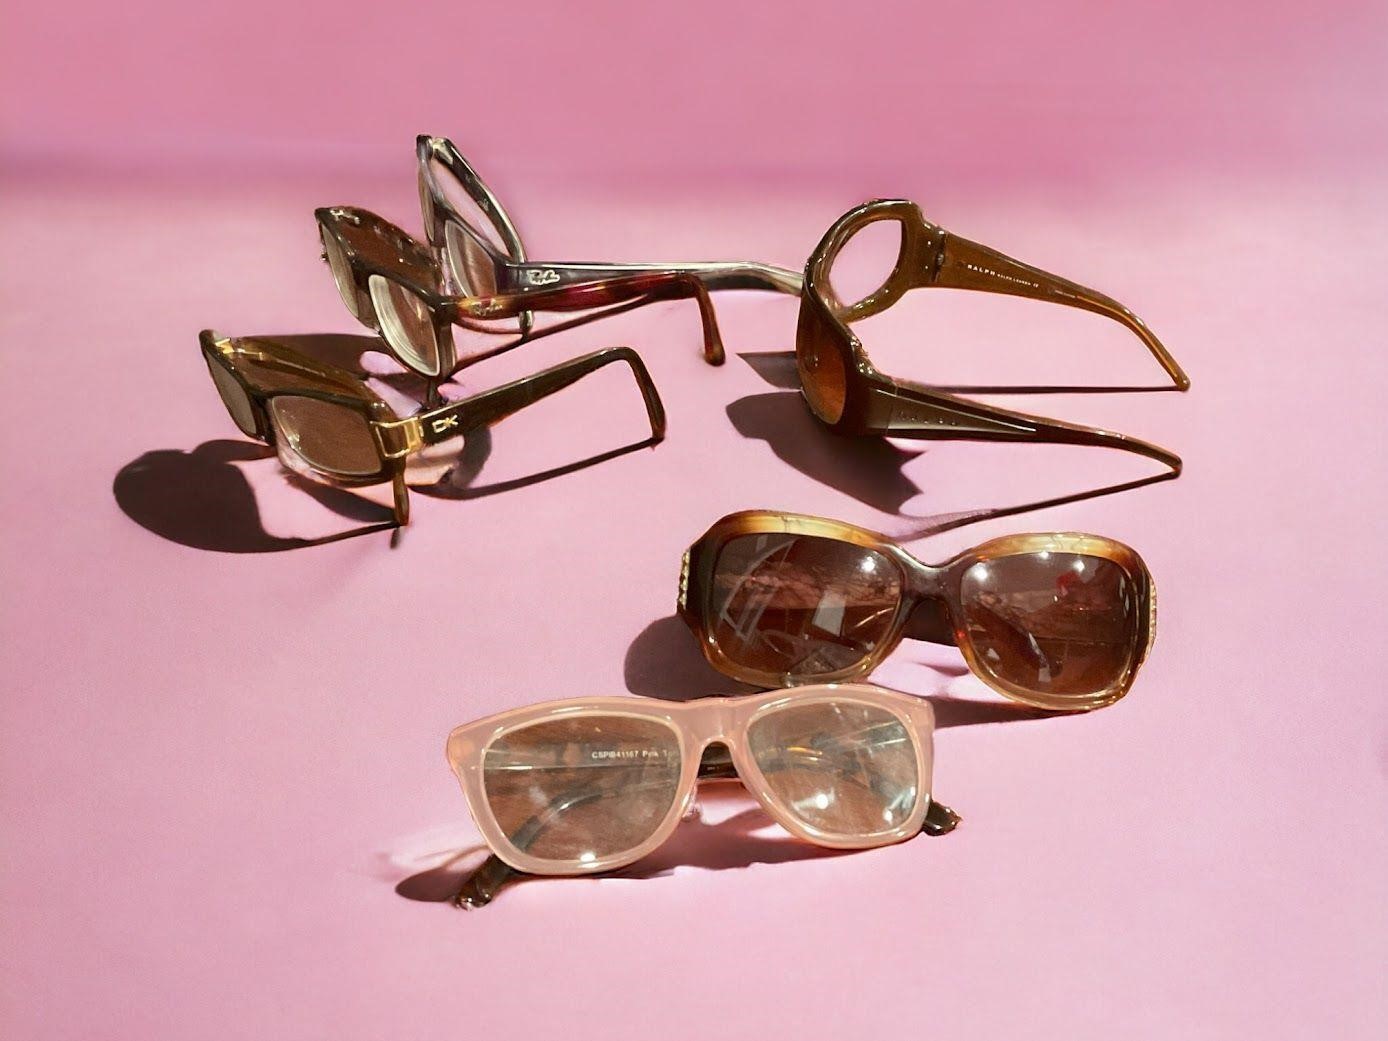 preowned designer sunglasses